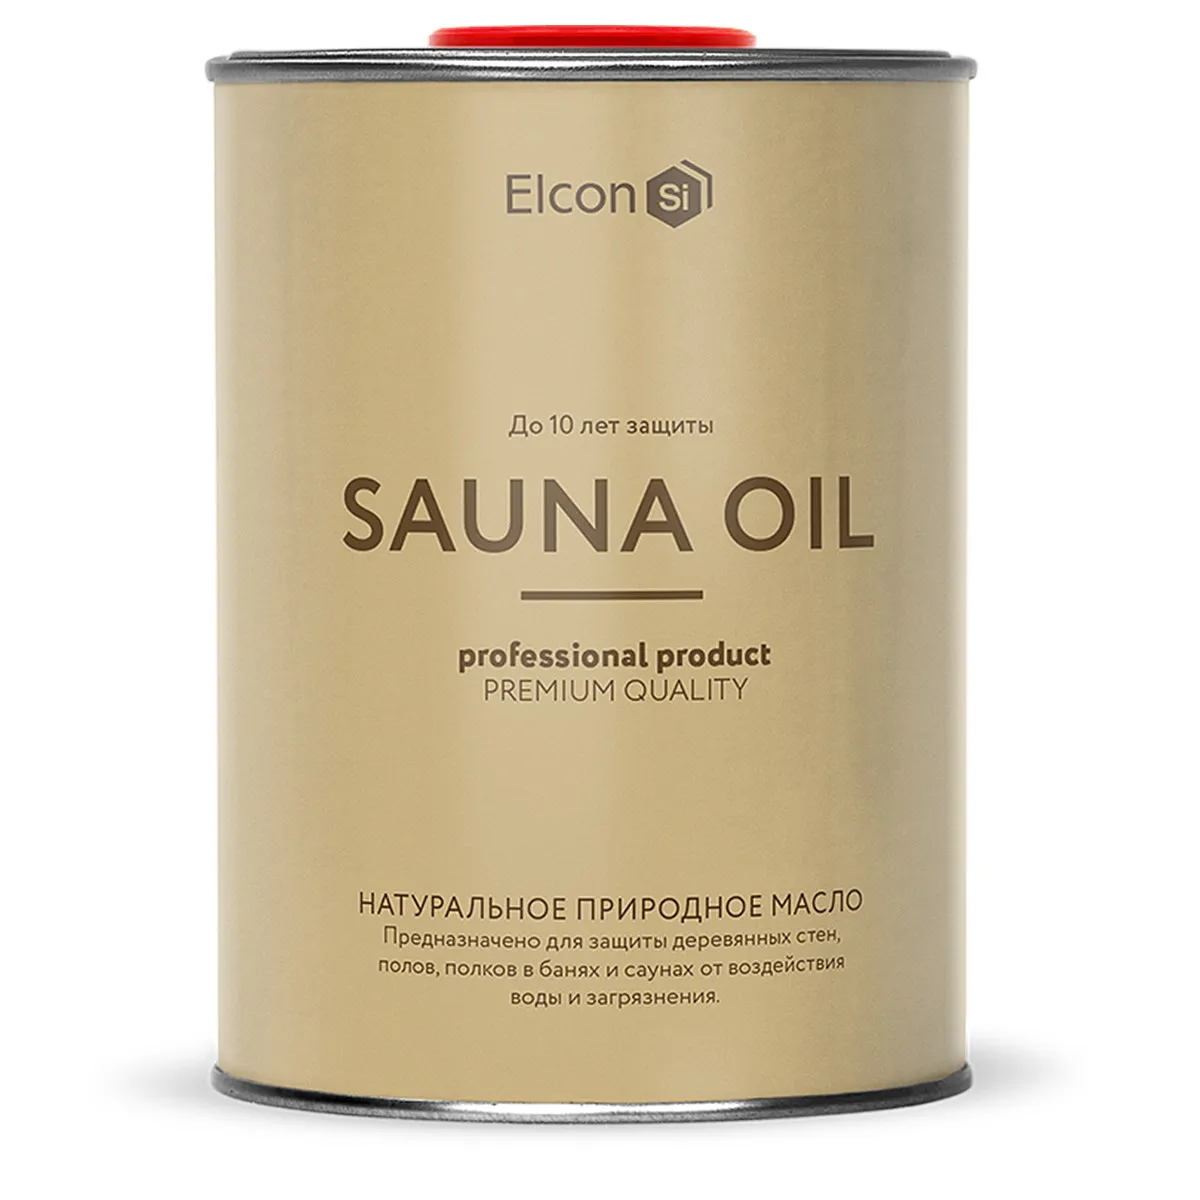 Масло для защиты древесины в банях и саунах Sauna Oil, 1 л#1